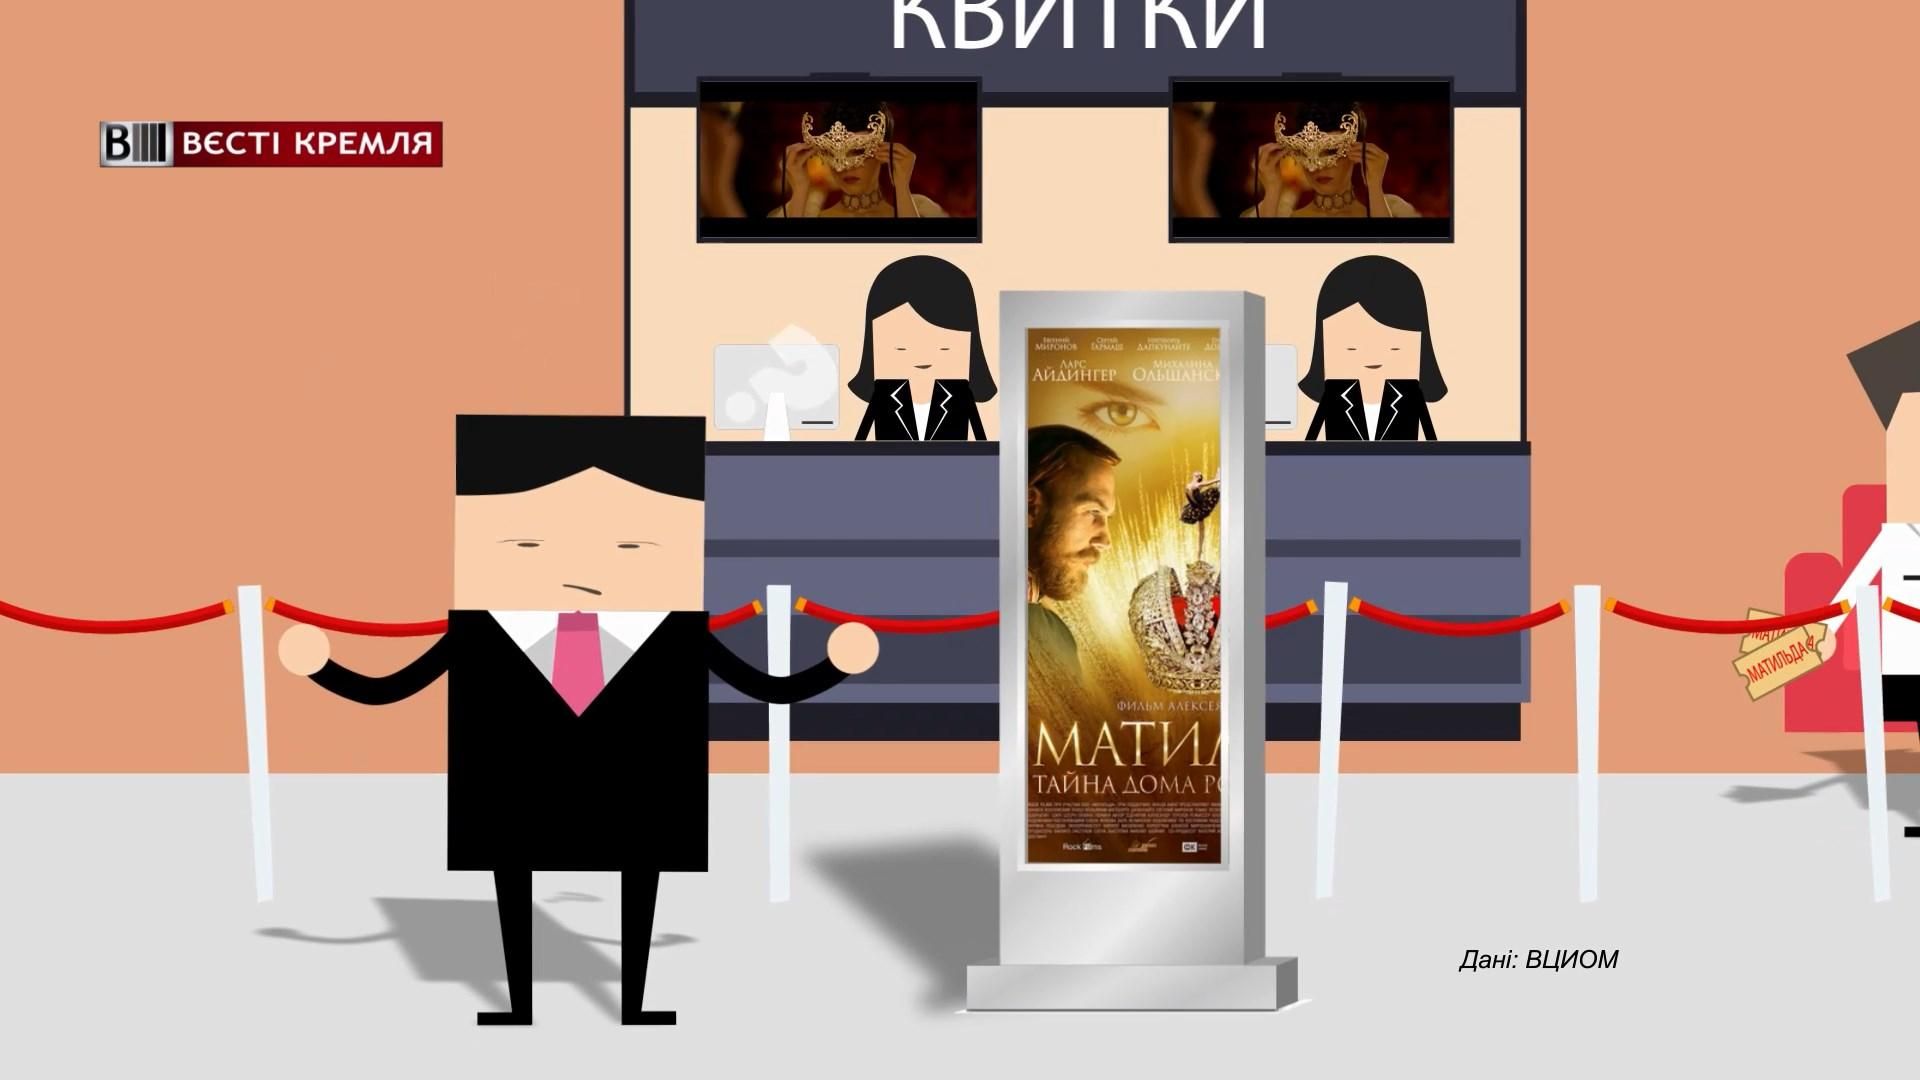 Скільки росіян не підтримують позицію Поклонської щодо фільму "Матильда"